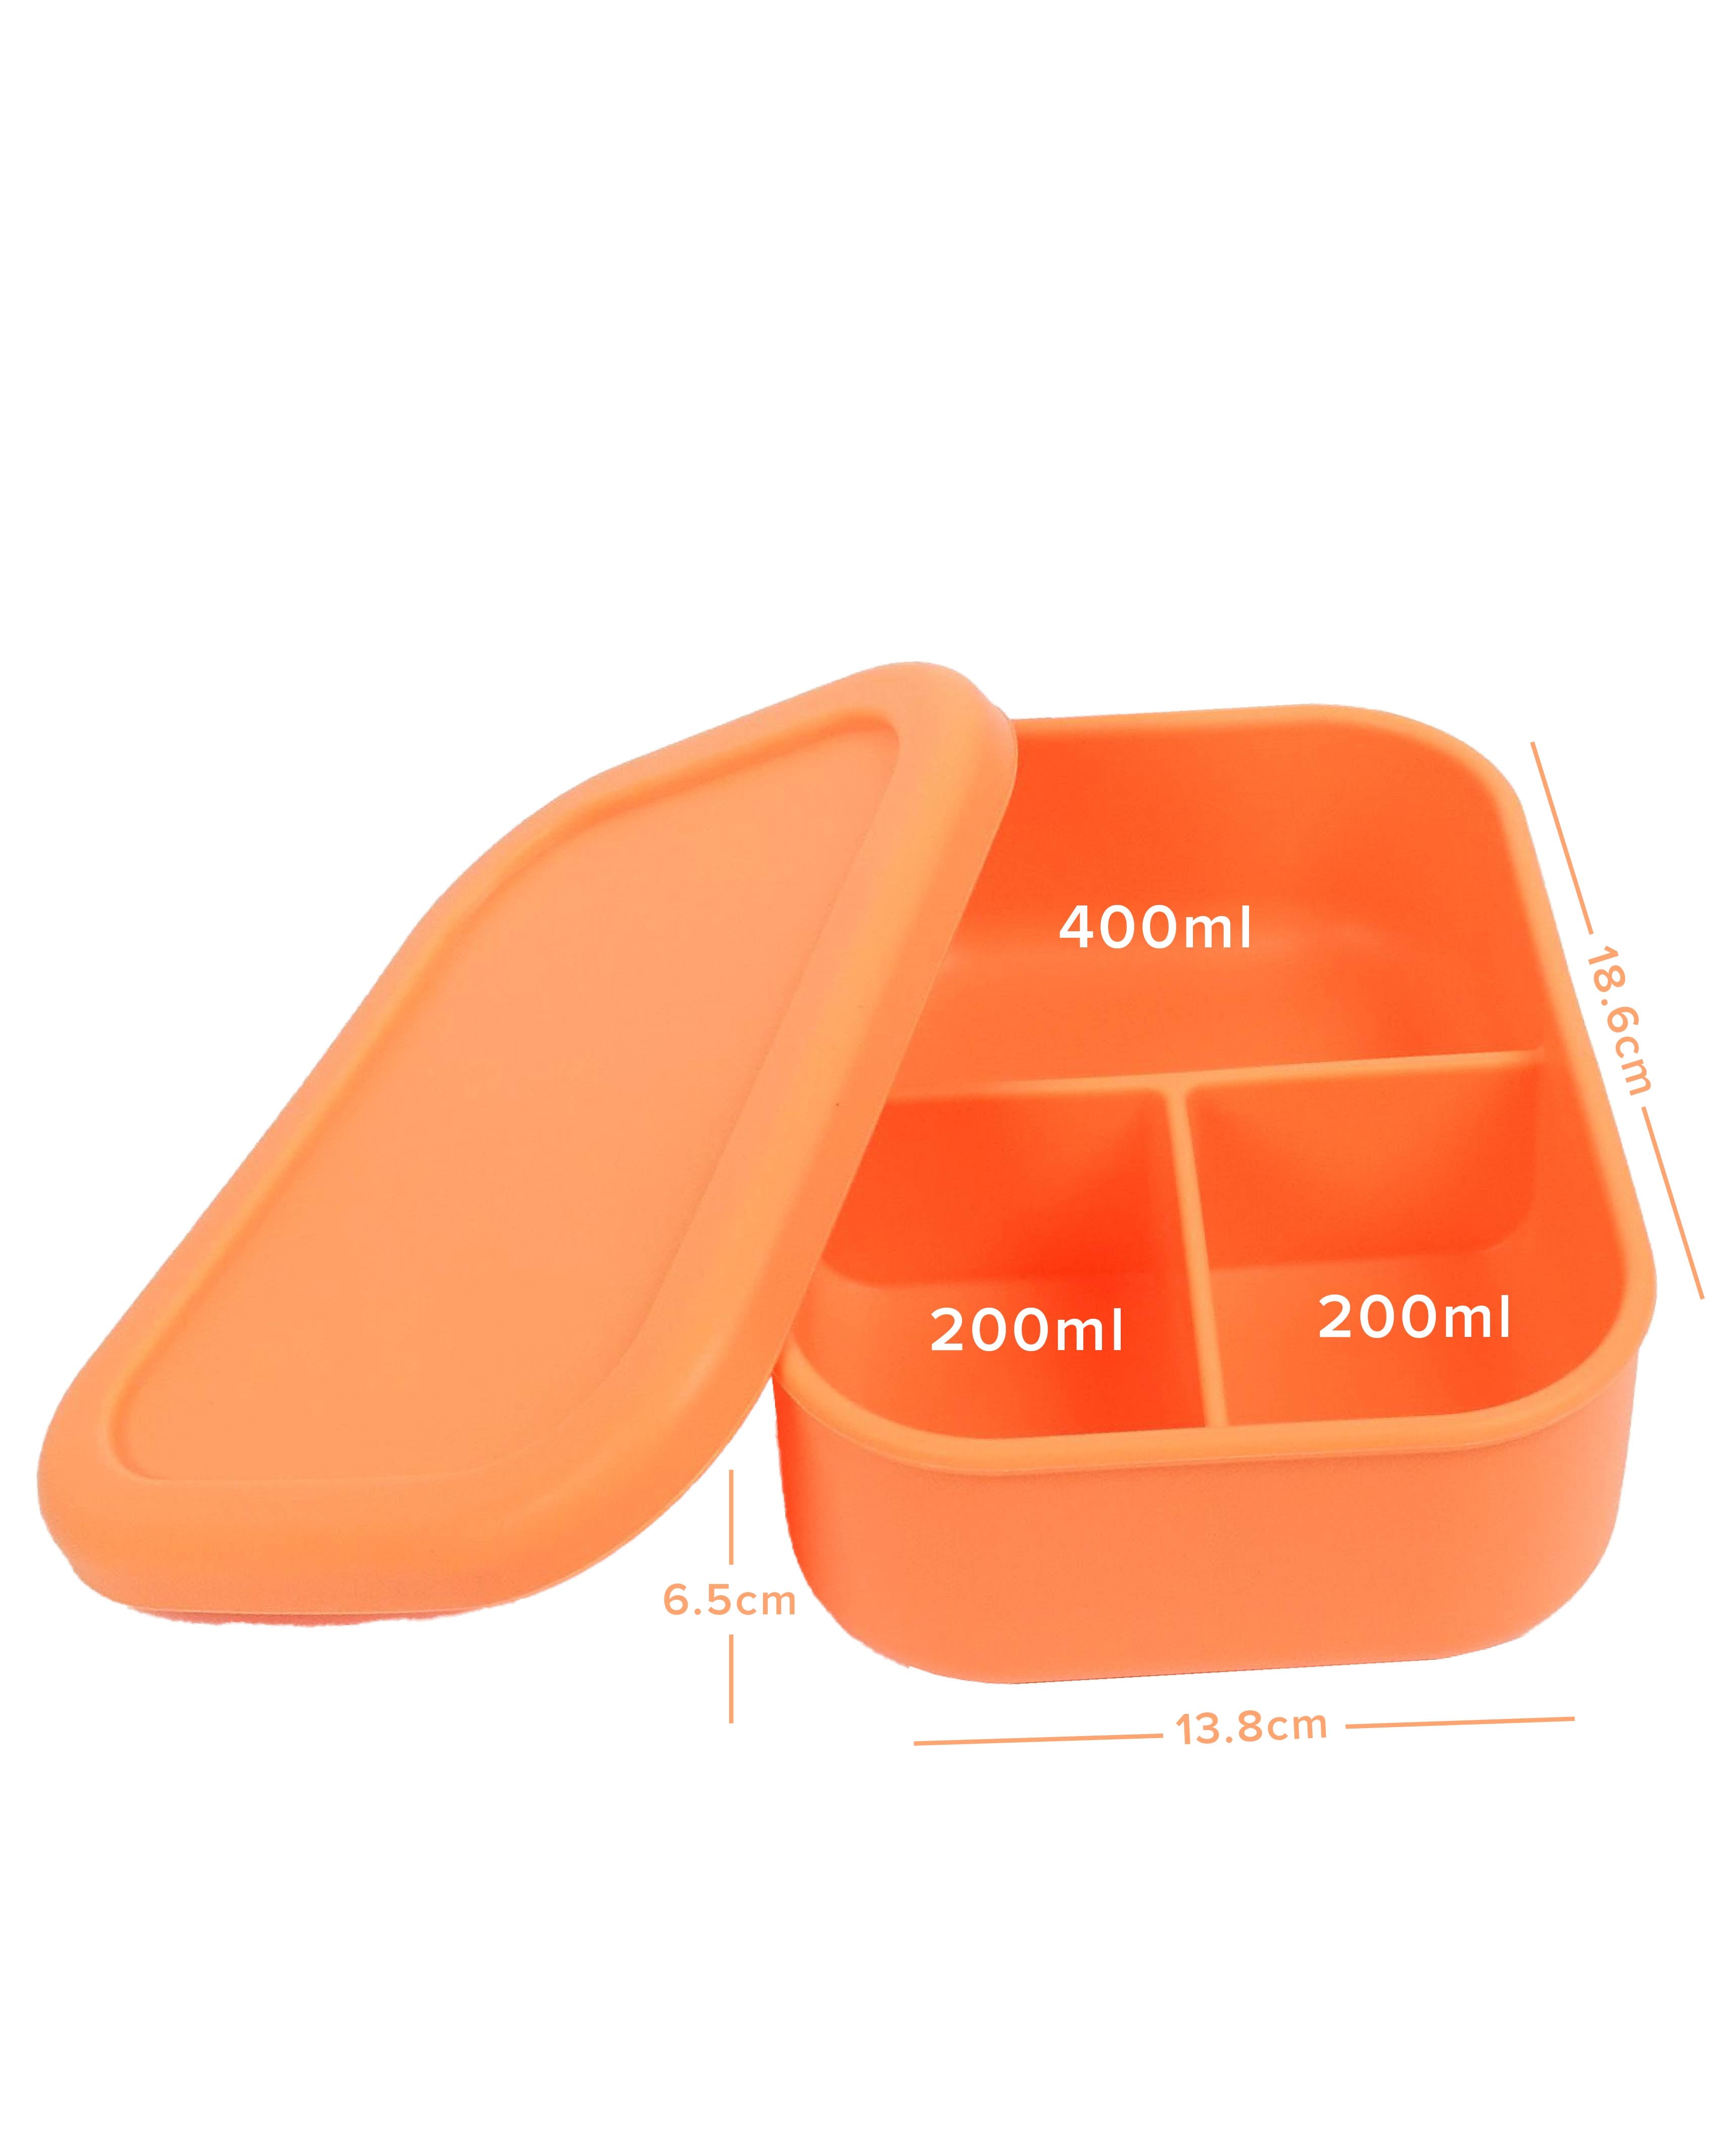 Apricot Silicone Bento Lunch Box